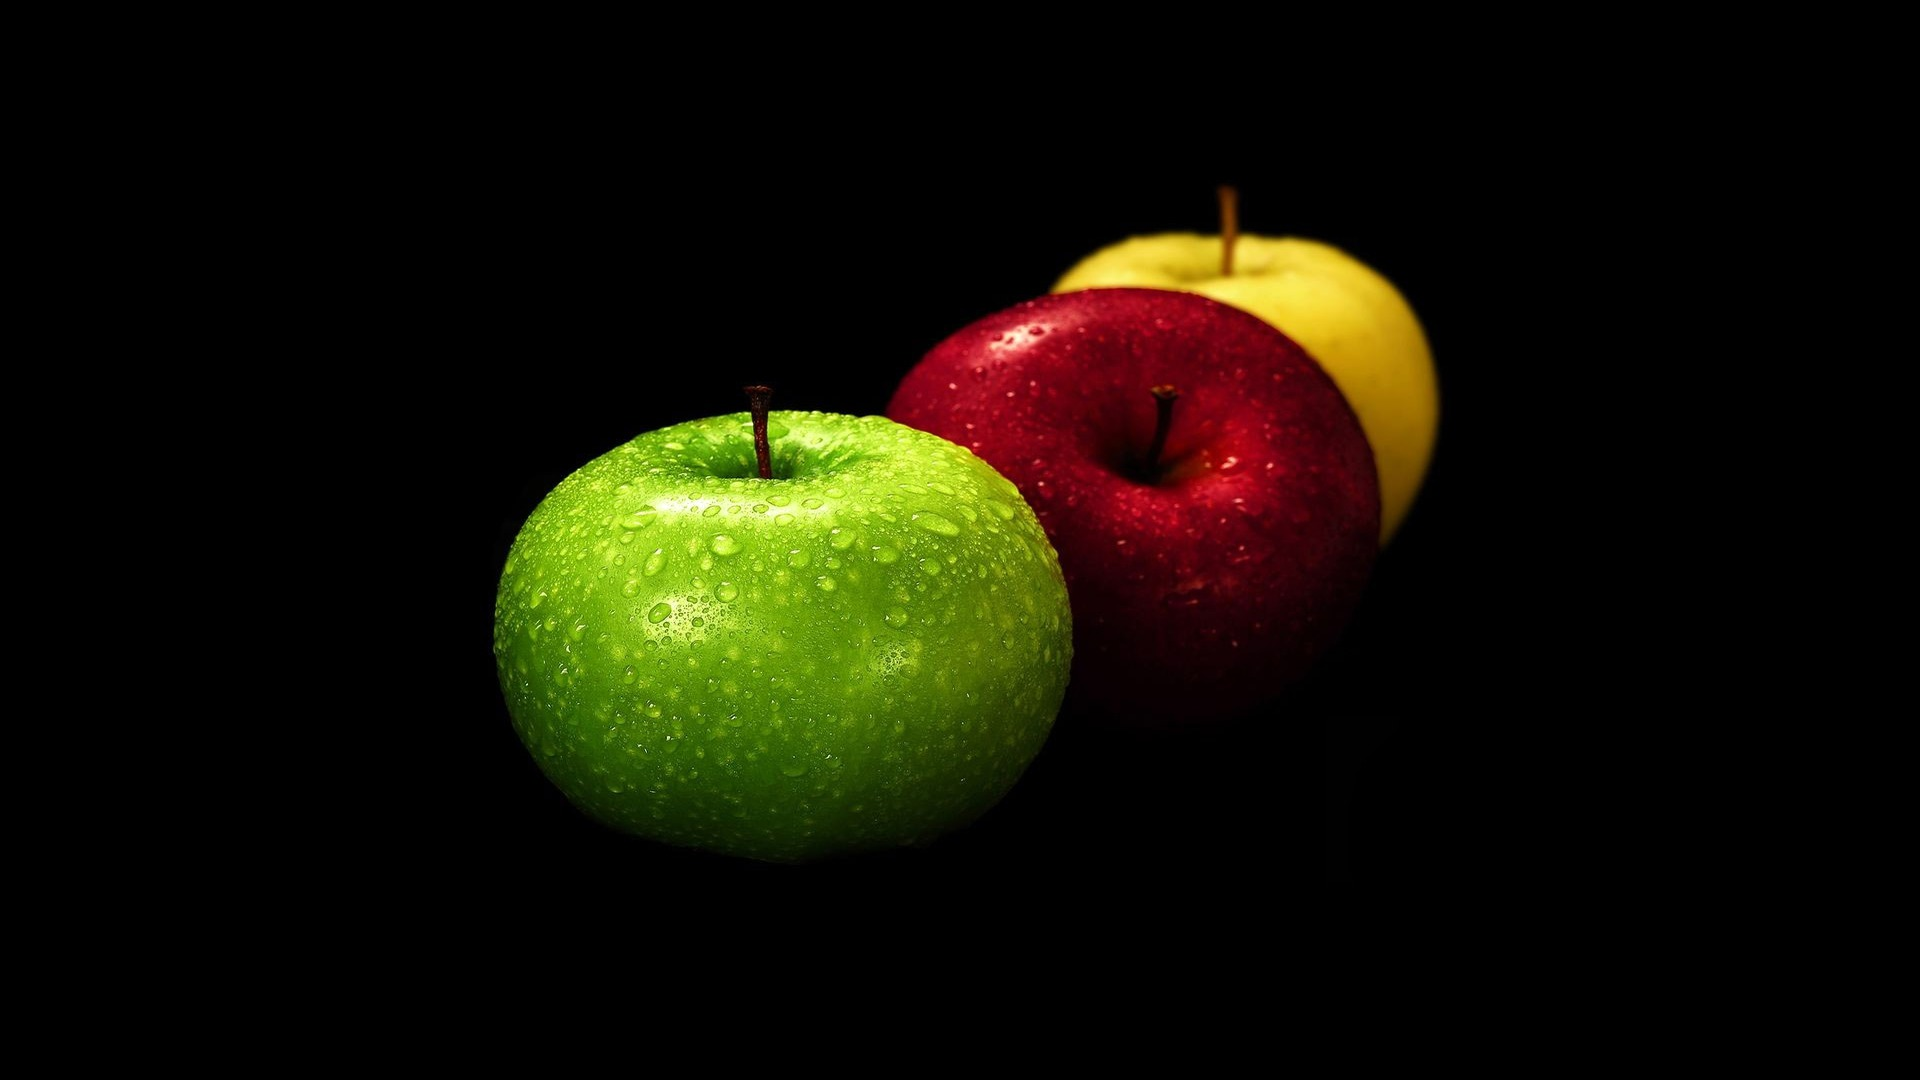 fruits, food, apples, black background - desktop wallpaper